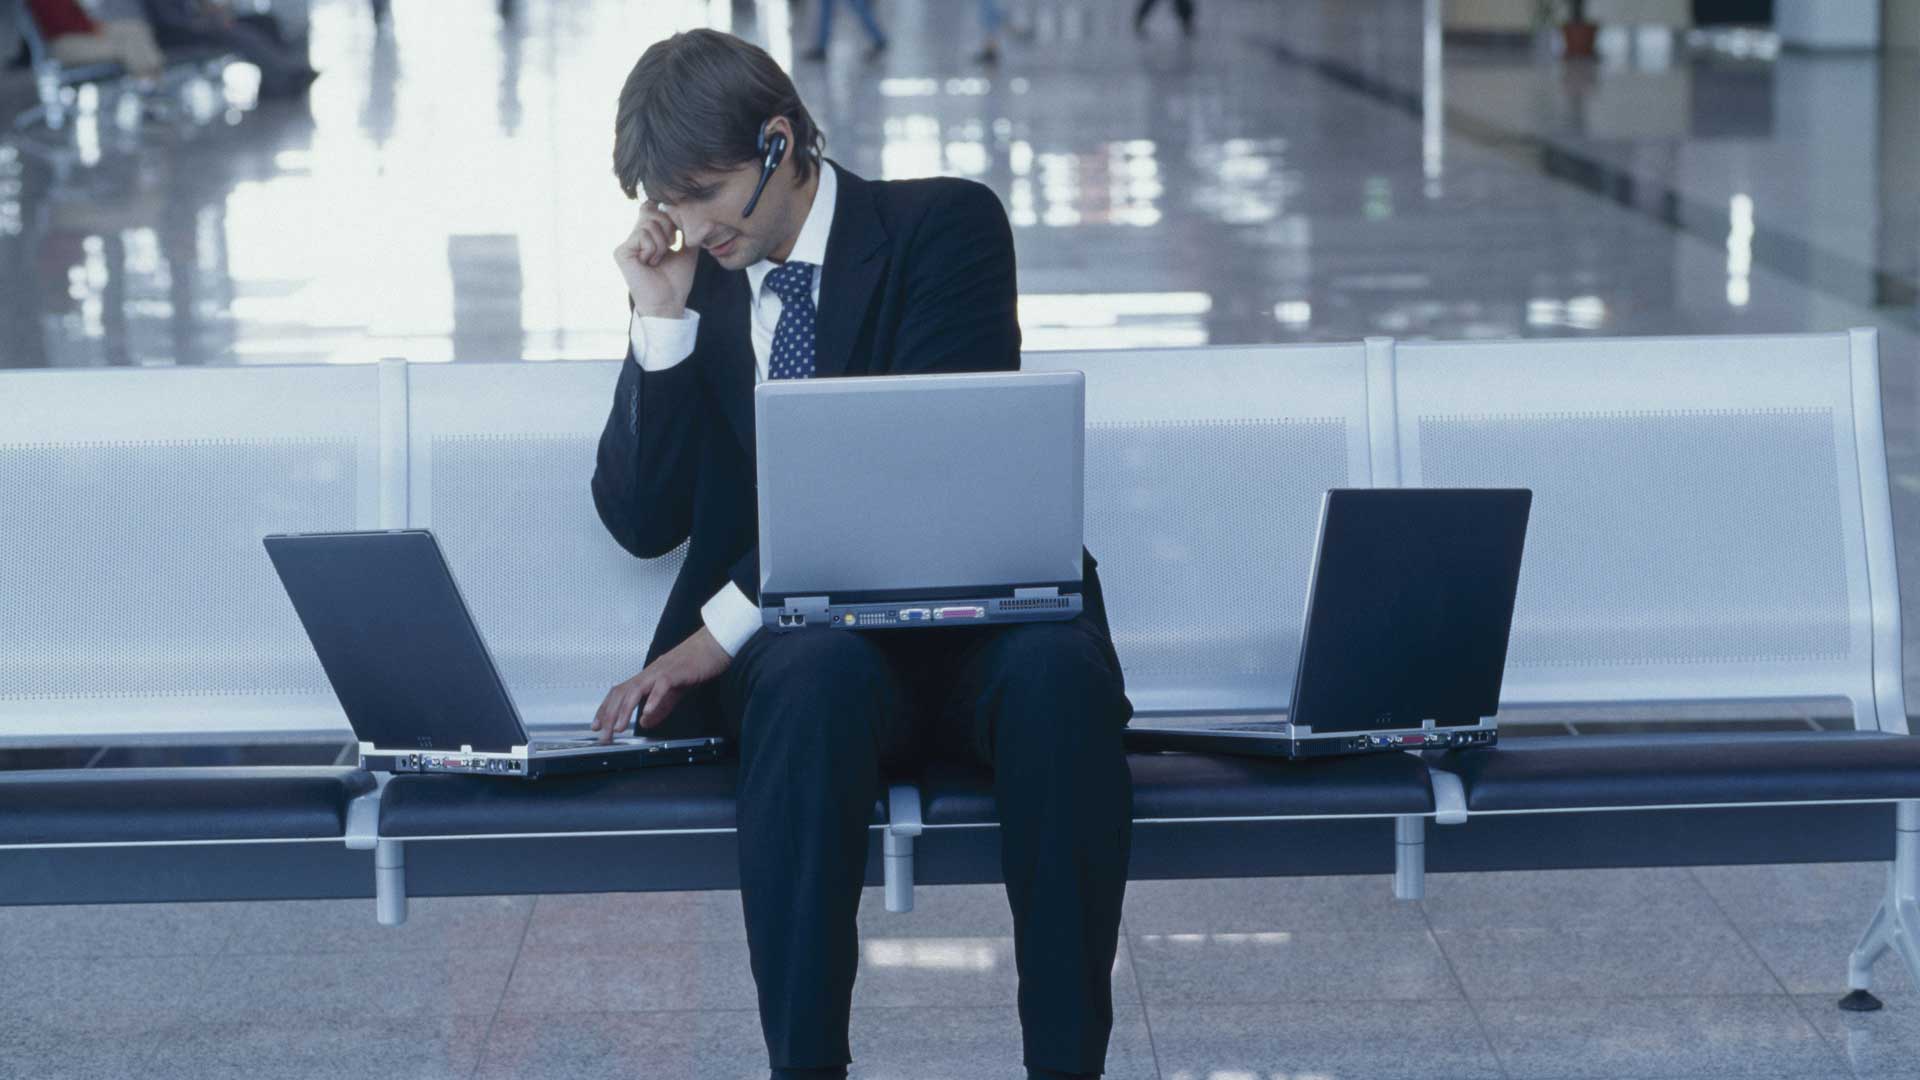 Mann arbeitet mit drei Laptops und Headset am Flughafen.